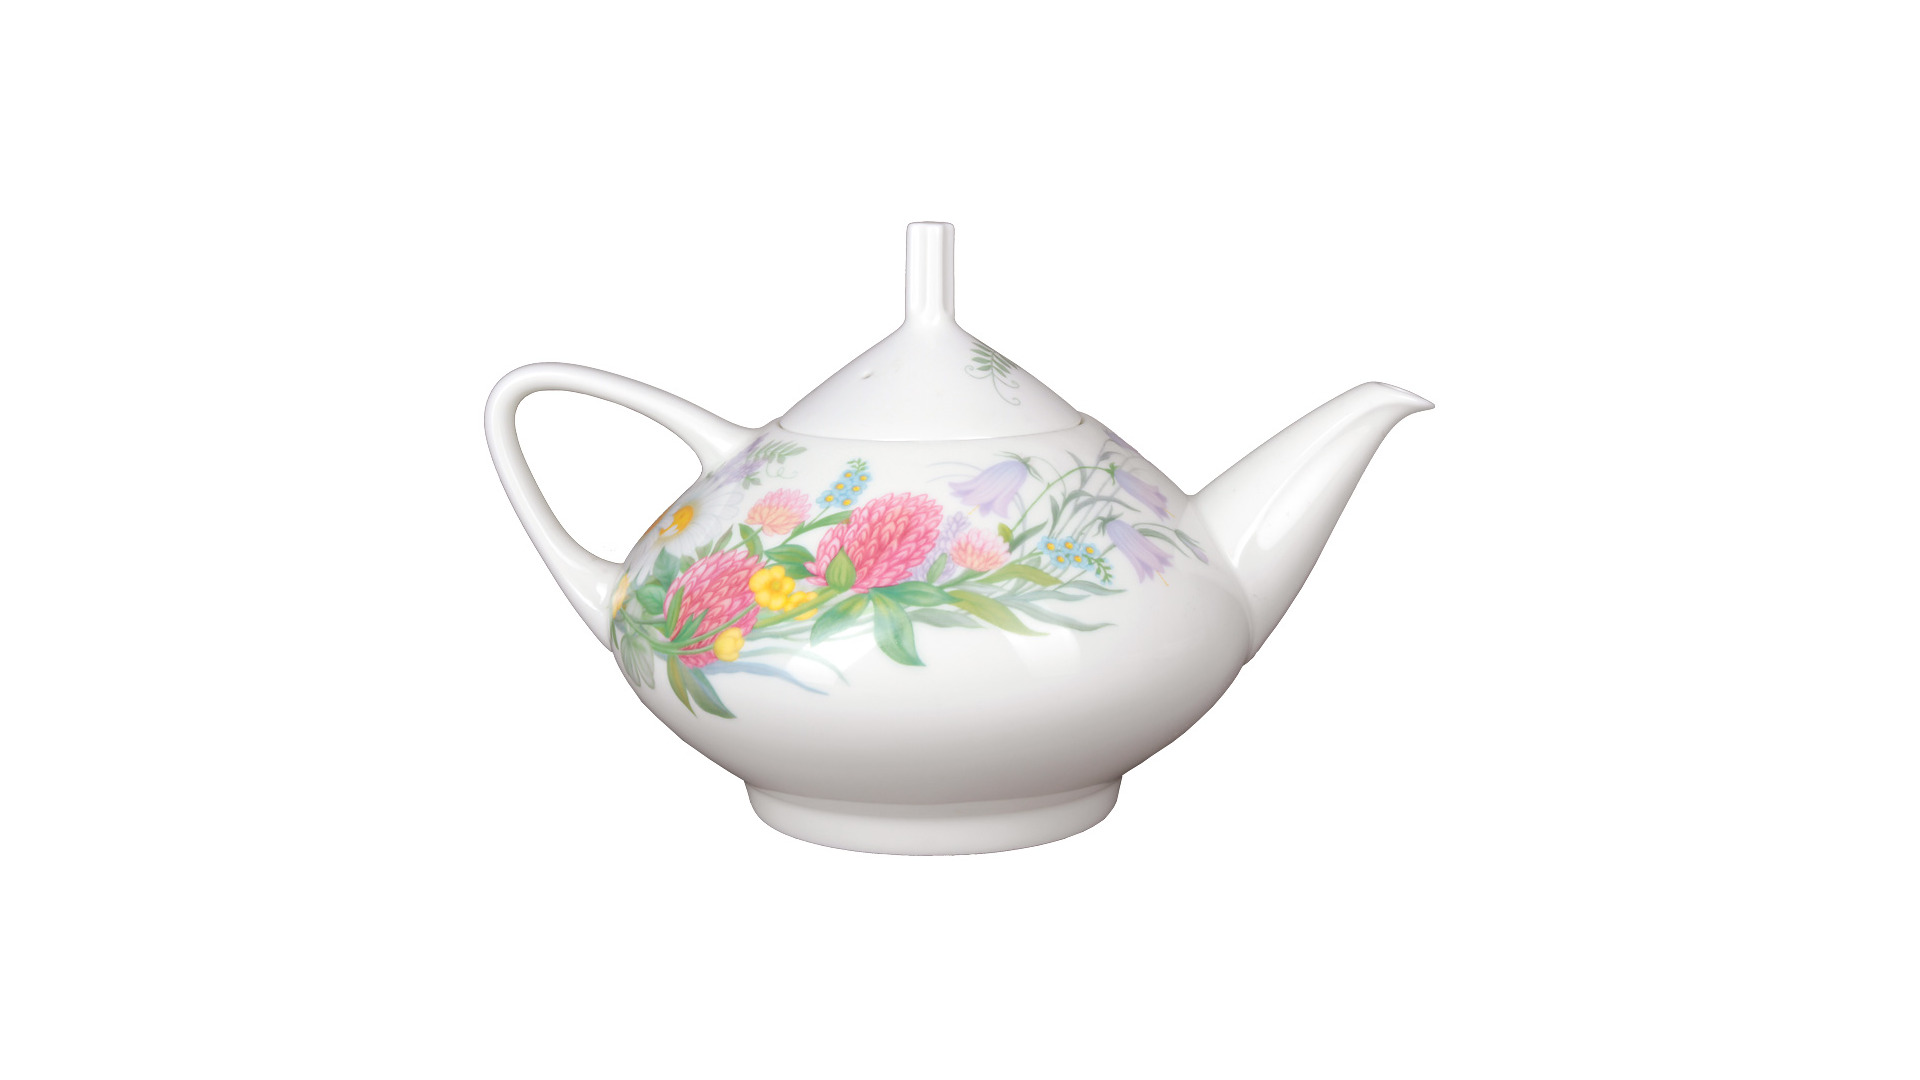 Сервиз чайный ИФЗ Полевые цветы Купольная на 6 персон 14 предметов, фарфор костяной